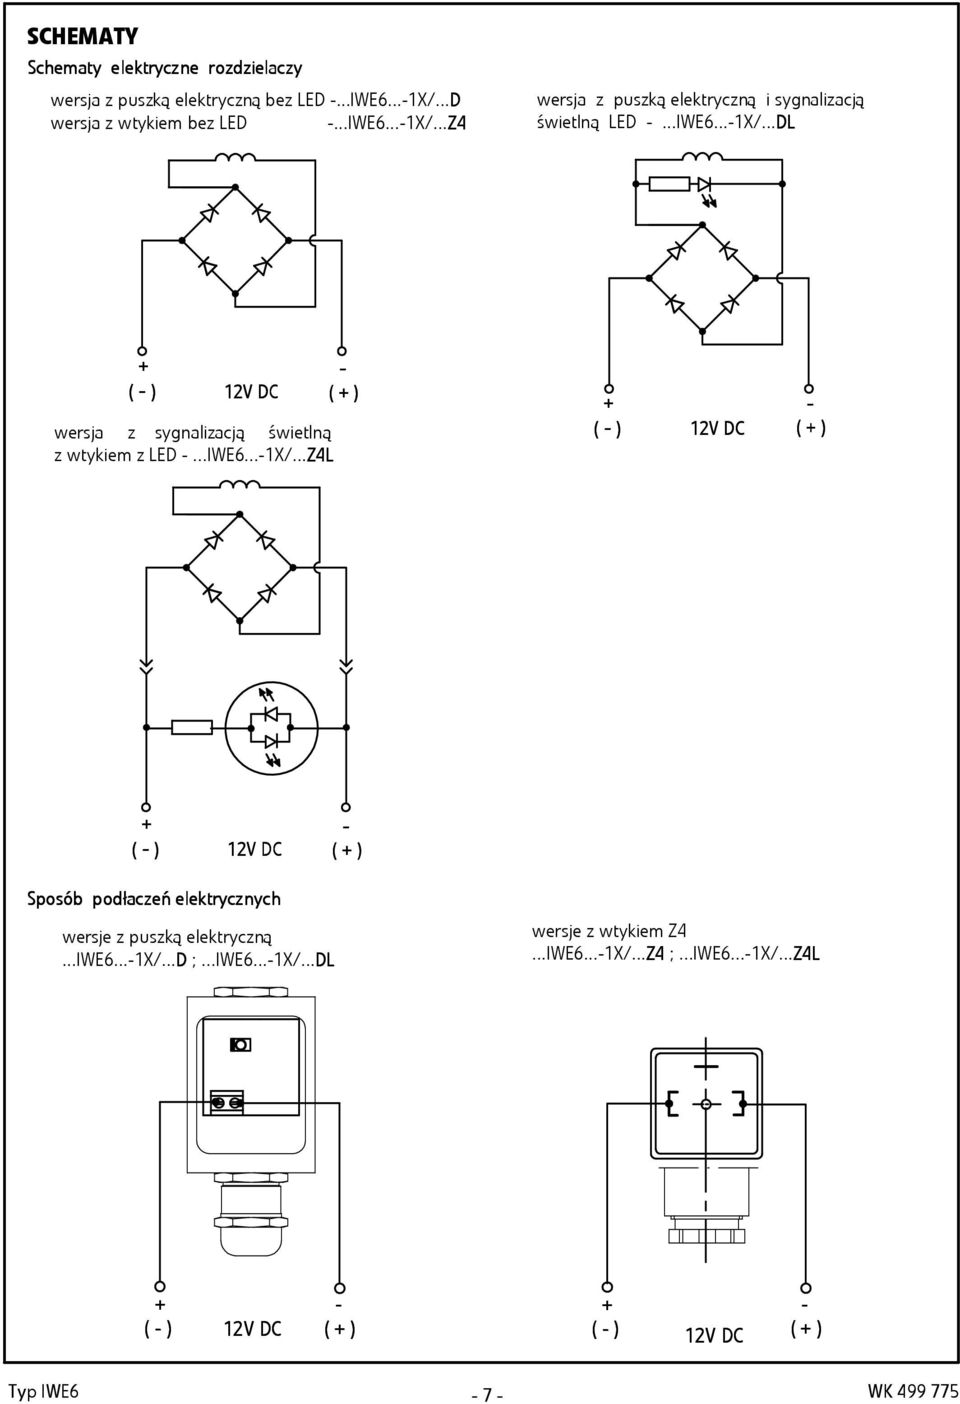 ..IWE6...-1X/...Z4L - ( + ) + ( - ) 12V DC - ( + ) + ( - ) 12V DC - ( + ) Sposób podp odłac acze zeń ele e lektrycz trycznyc nych wersje z puszką elektryczną.